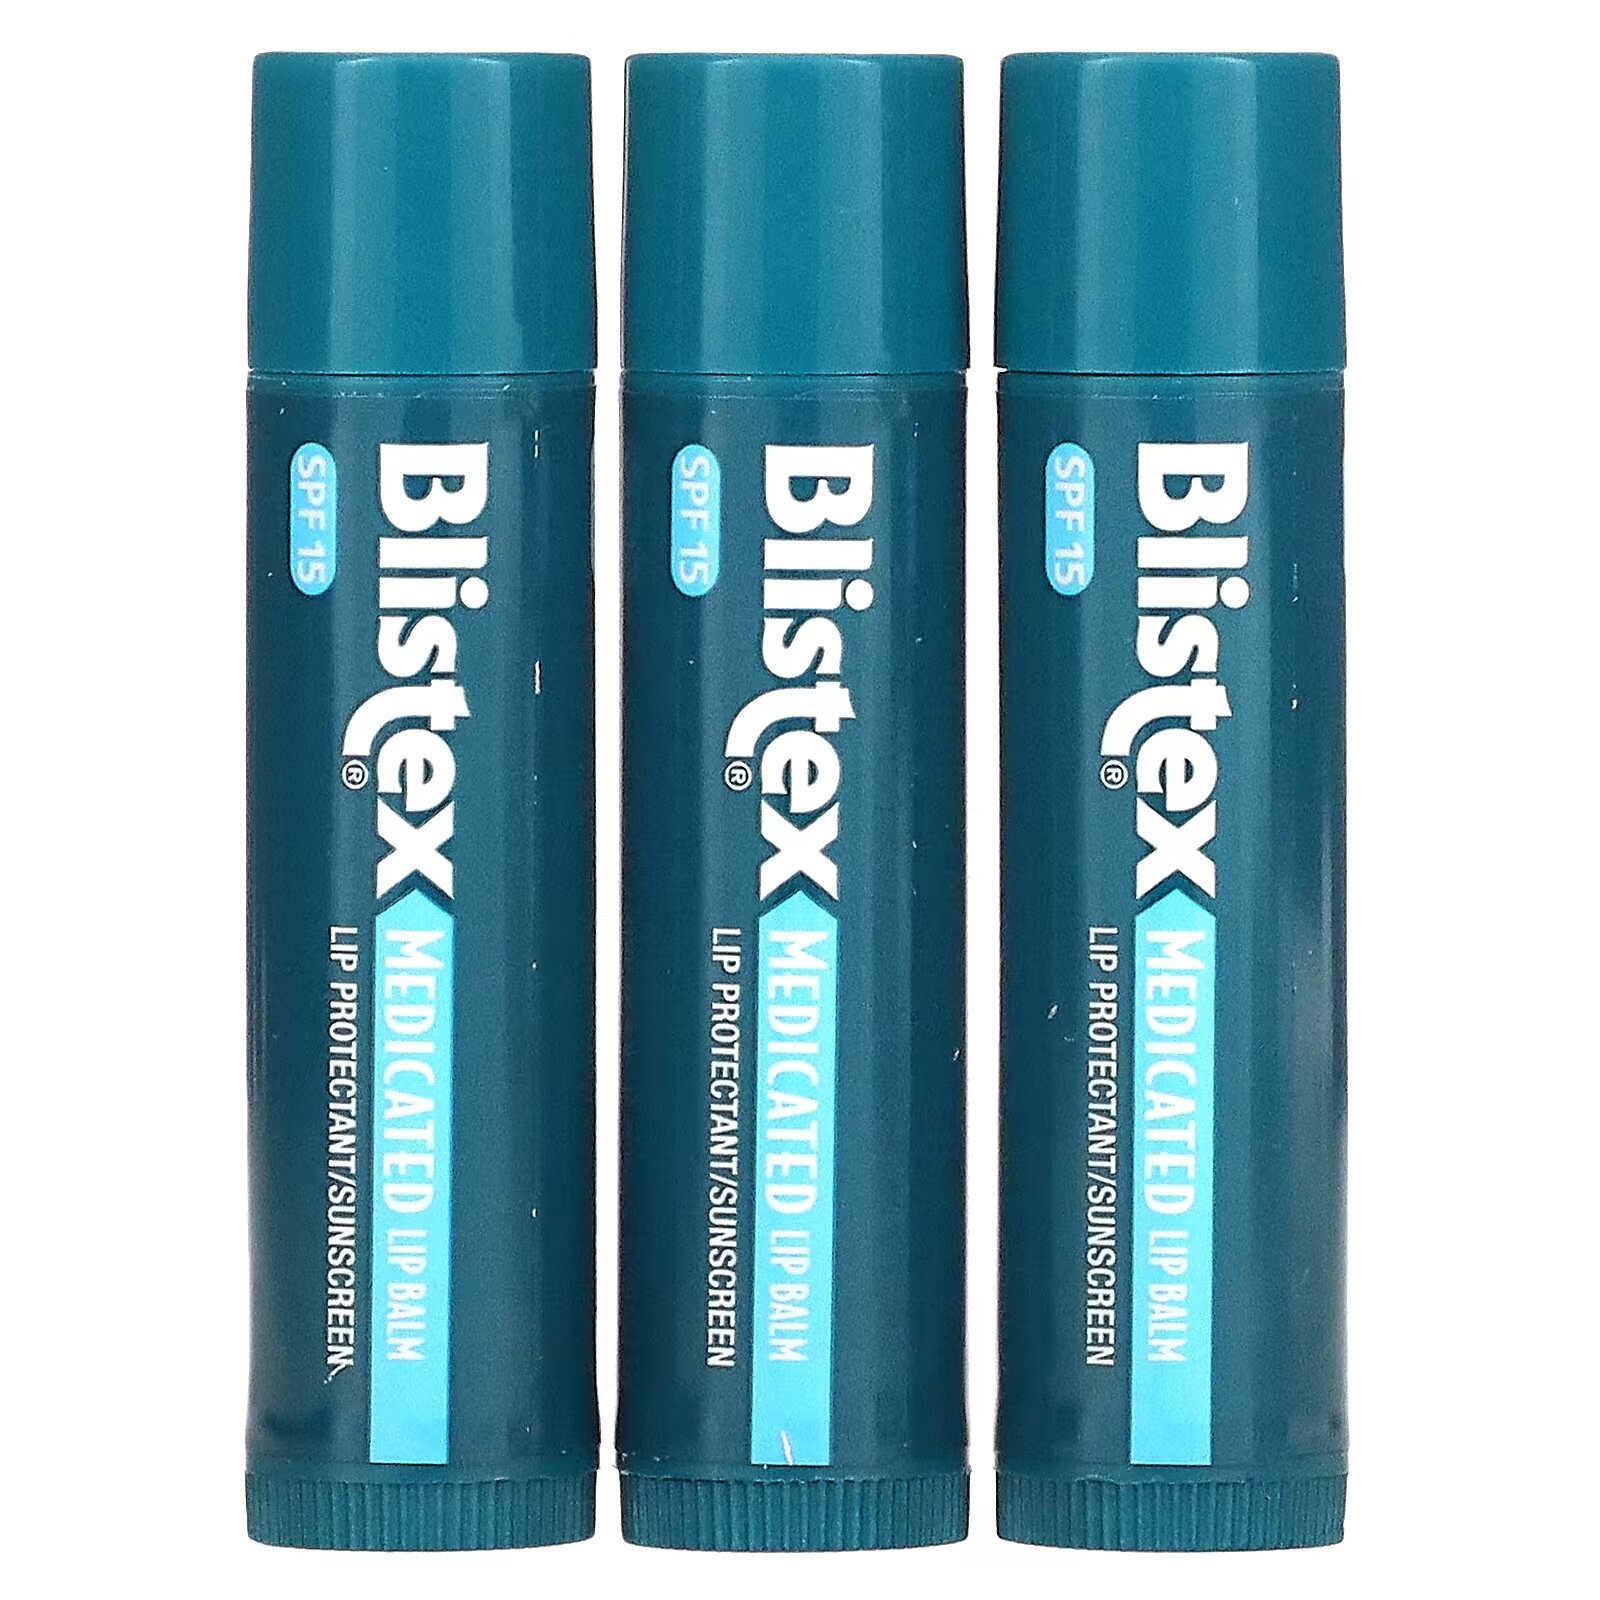 Заживляющий бальзам для губ Blistex с солнцезащитным фильтром SPF 15, в упаковке 3 бальзама по 4,25 г цена и фото